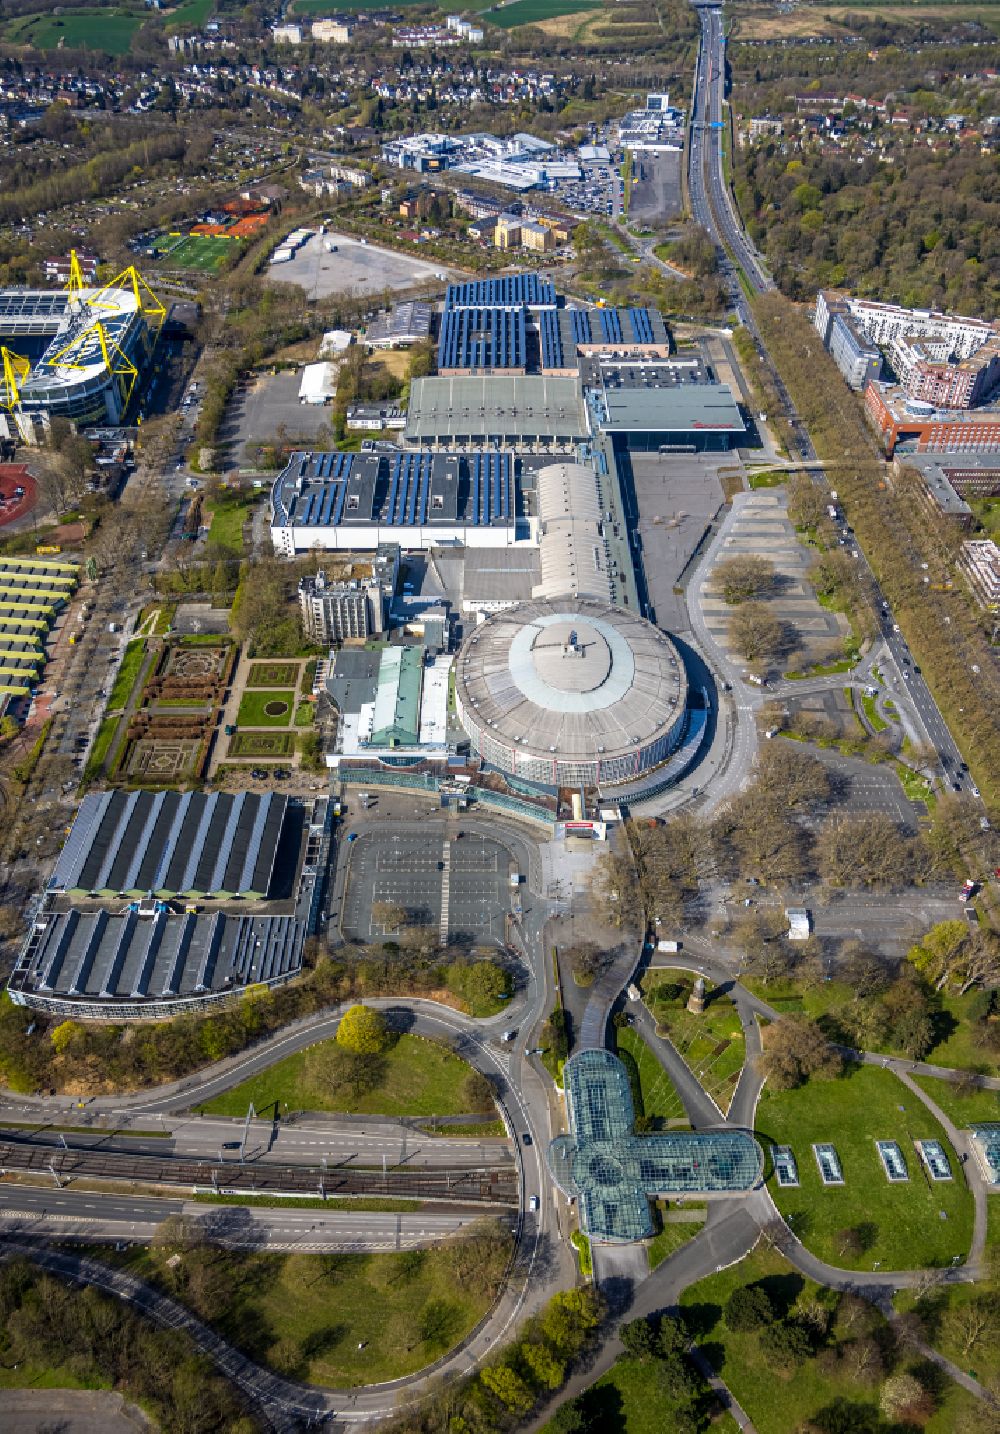 Luftbild Dortmund - Messegelände und Arena des BVB - Stadion Signal Iduna Park im Stadtteil Westfalenhalle in Dortmund im Bundesland Nordrhein-Westfalen